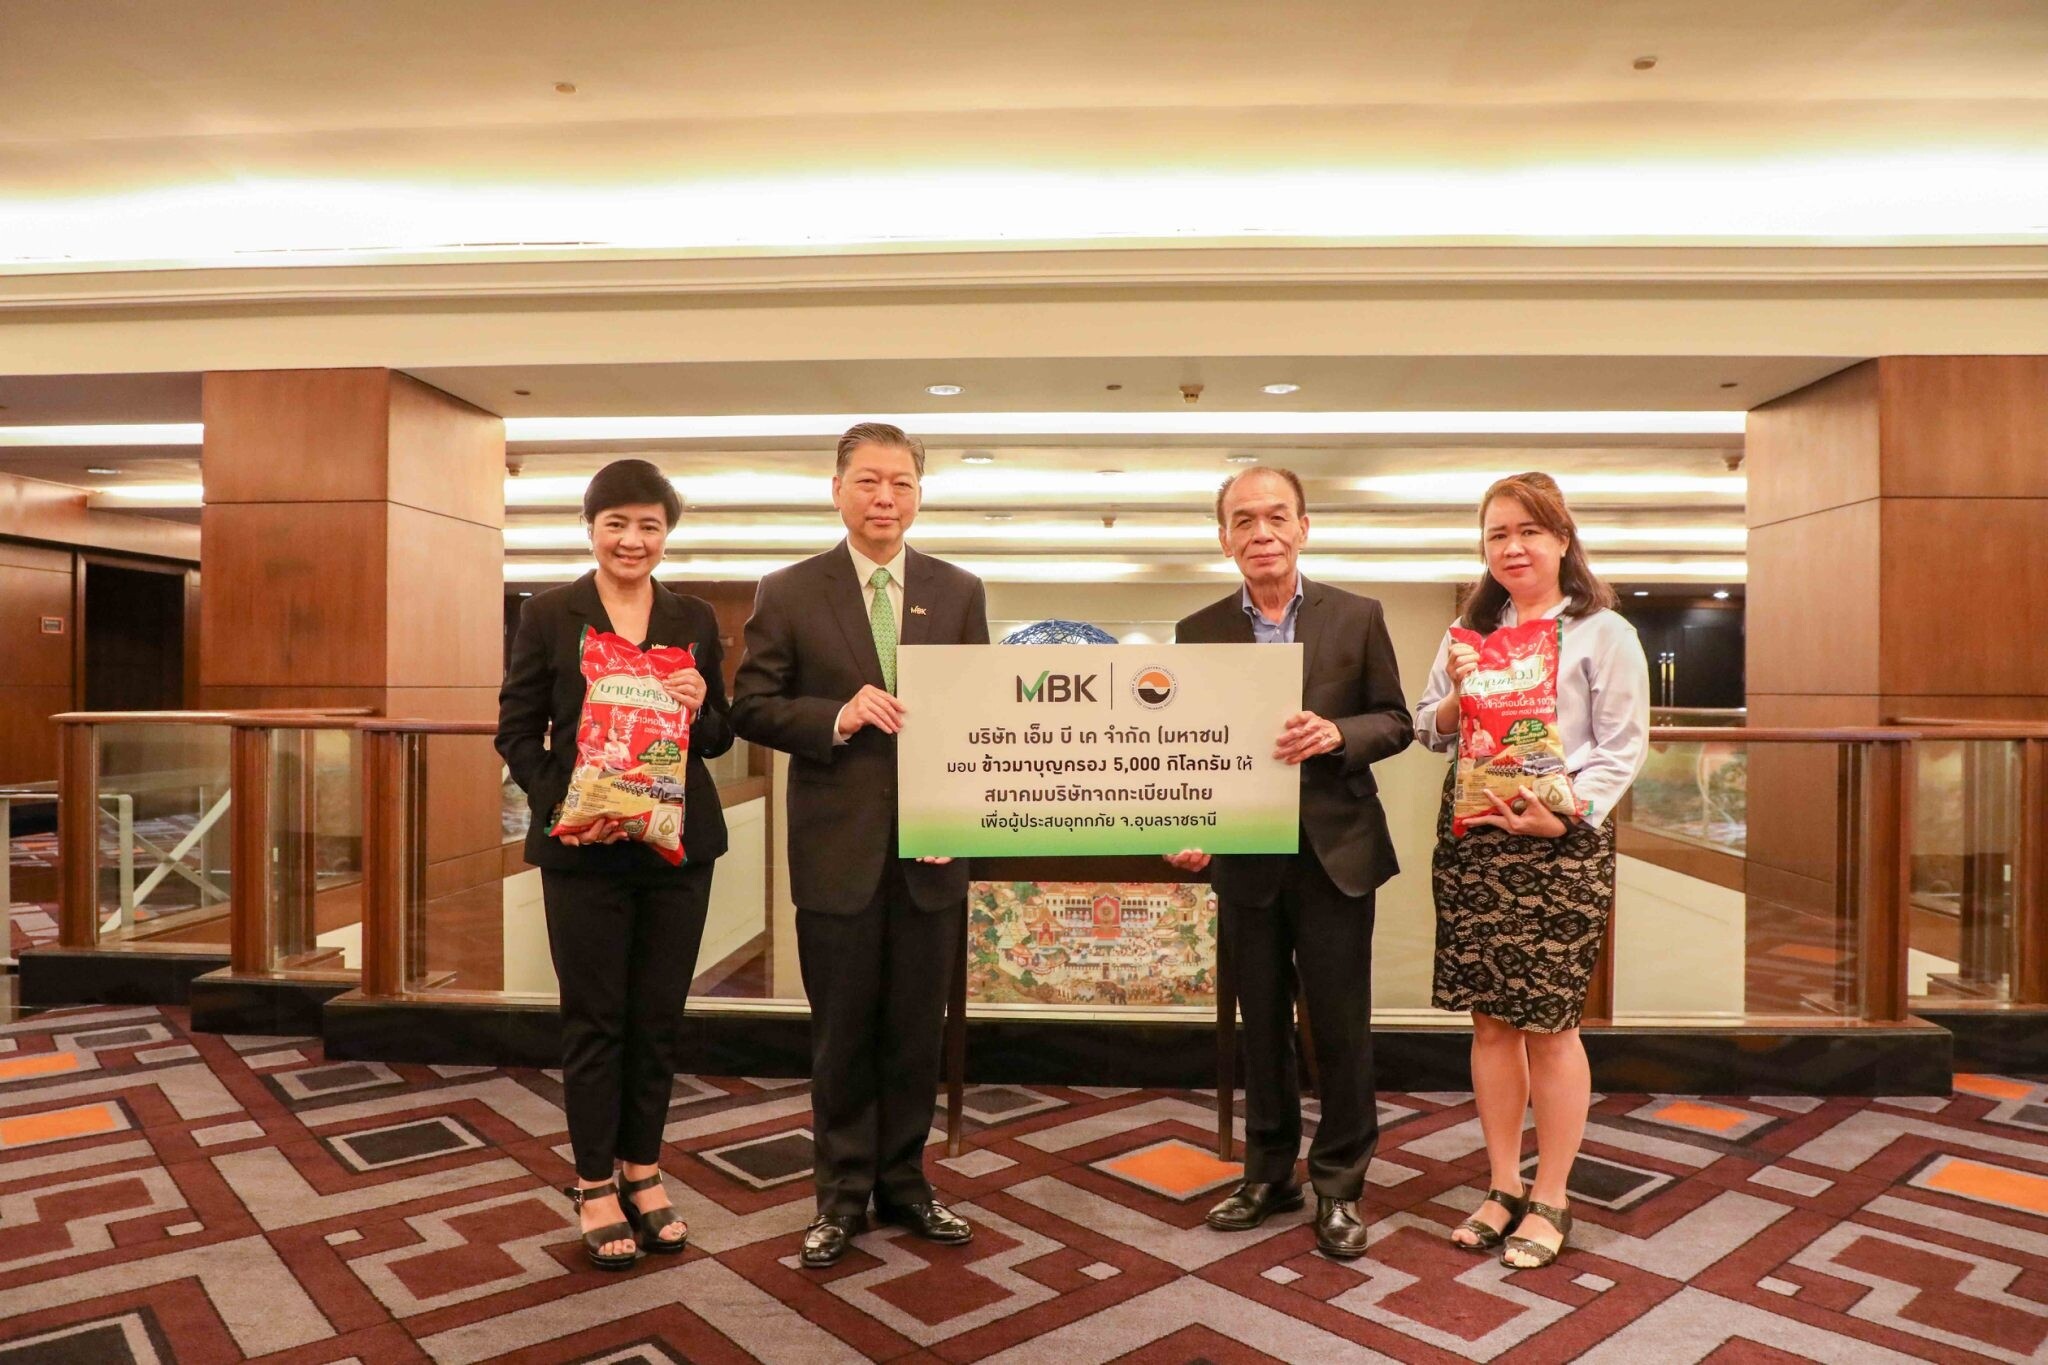 เอ็ม บี เค มอบข้าวมาบุญครอง 5,000 กิโลกรัม ให้แก่ สมาคมบริษัทจดทะเบียนไทย เพื่อช่วยผู้ประสบอุทกภัยจังหวัดอุบลราชธานี